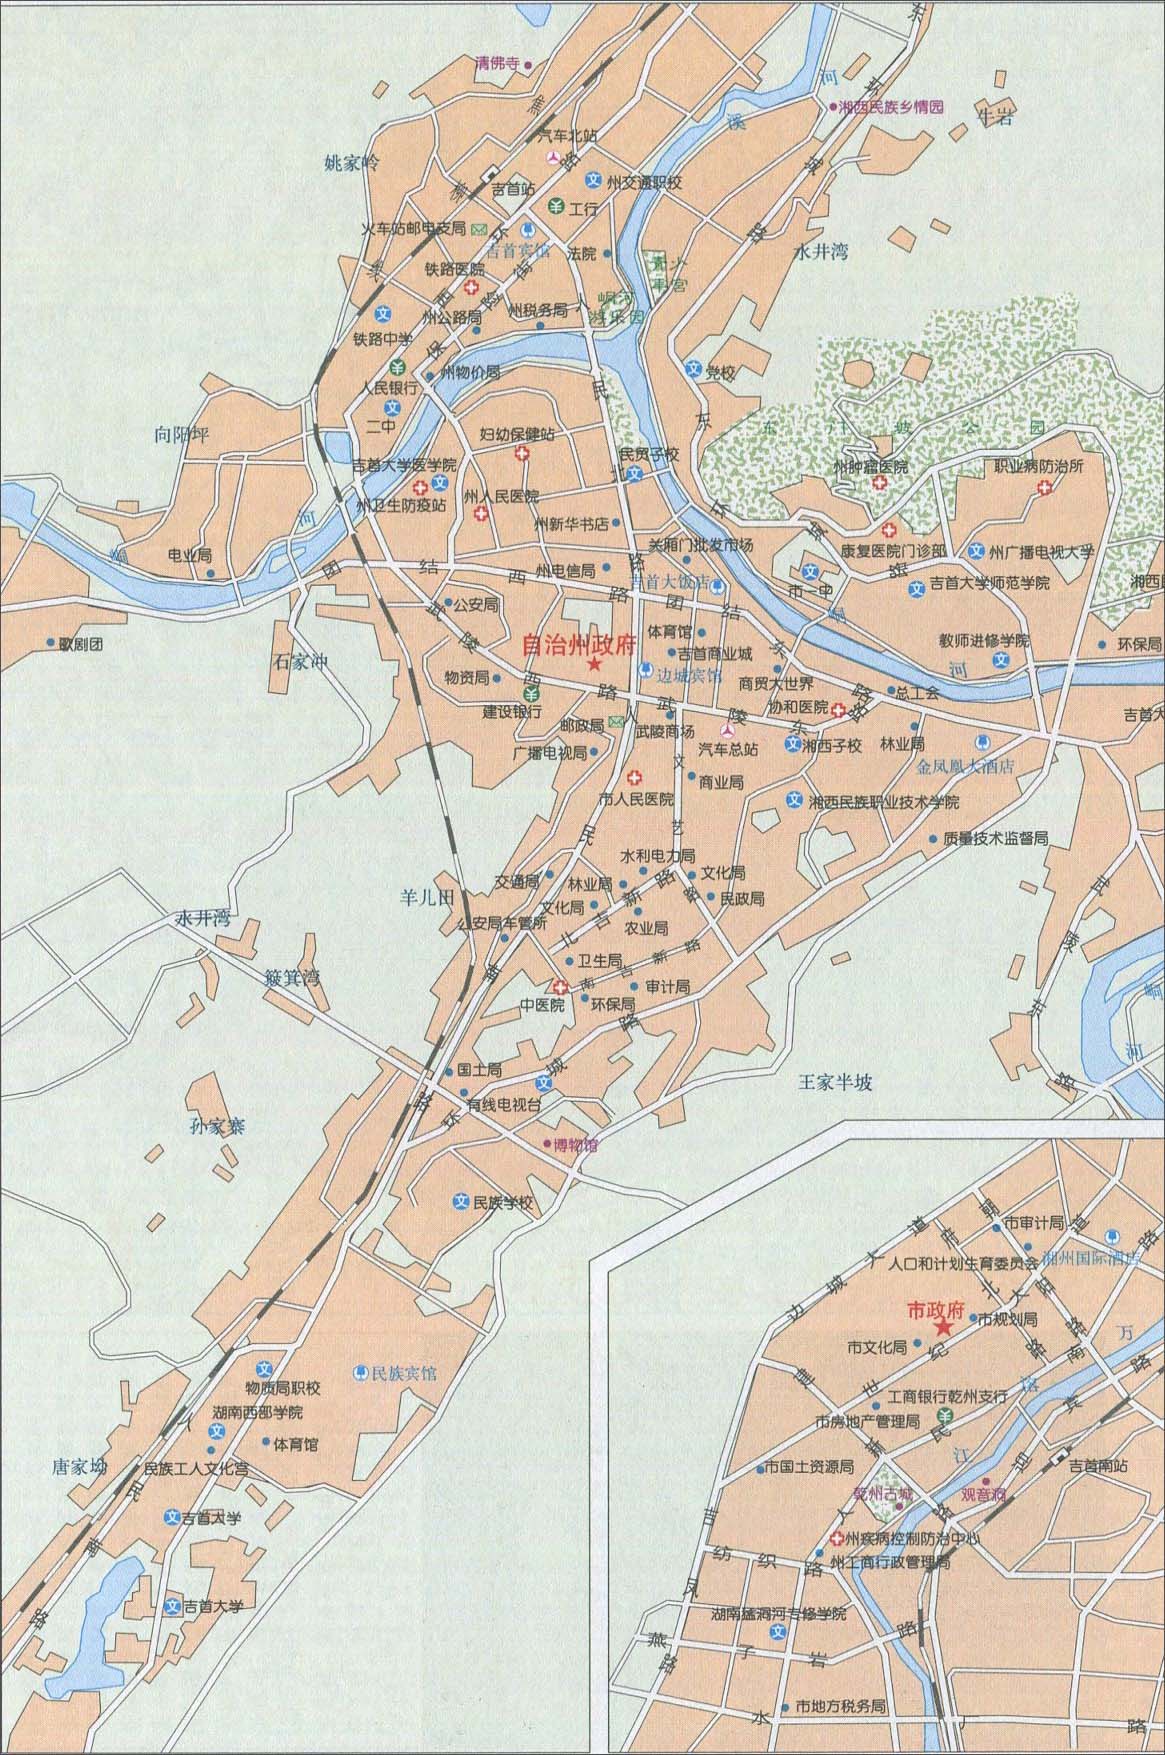  吉首城区地图                             相关: 长沙市